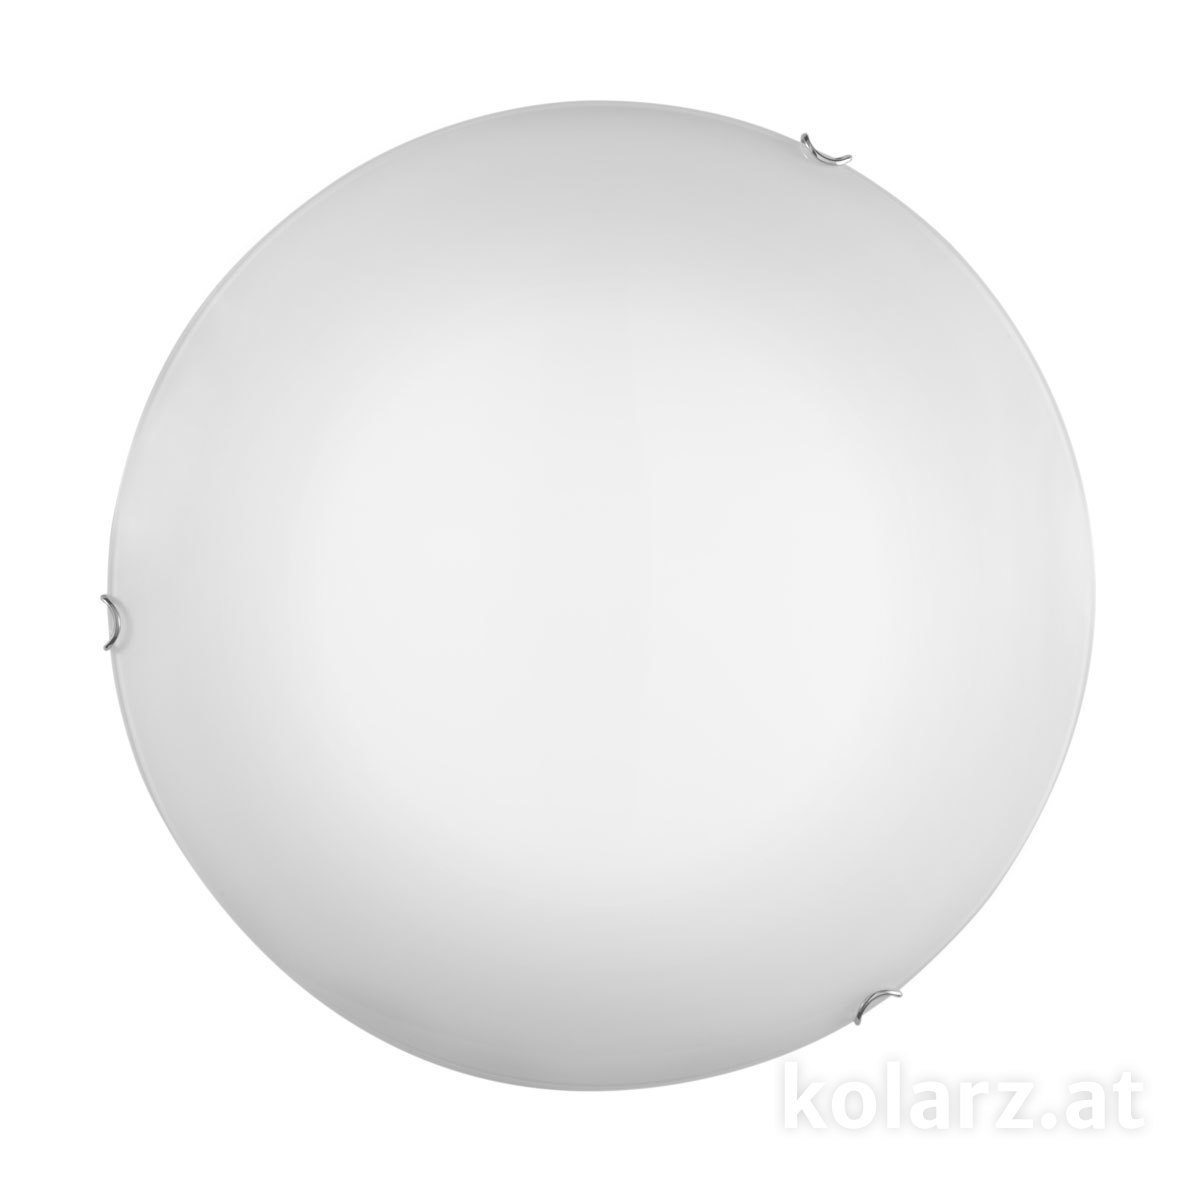 KOLARZ Leuchten - A1306.11.5 - Deckenleuchte MOON 30 cm